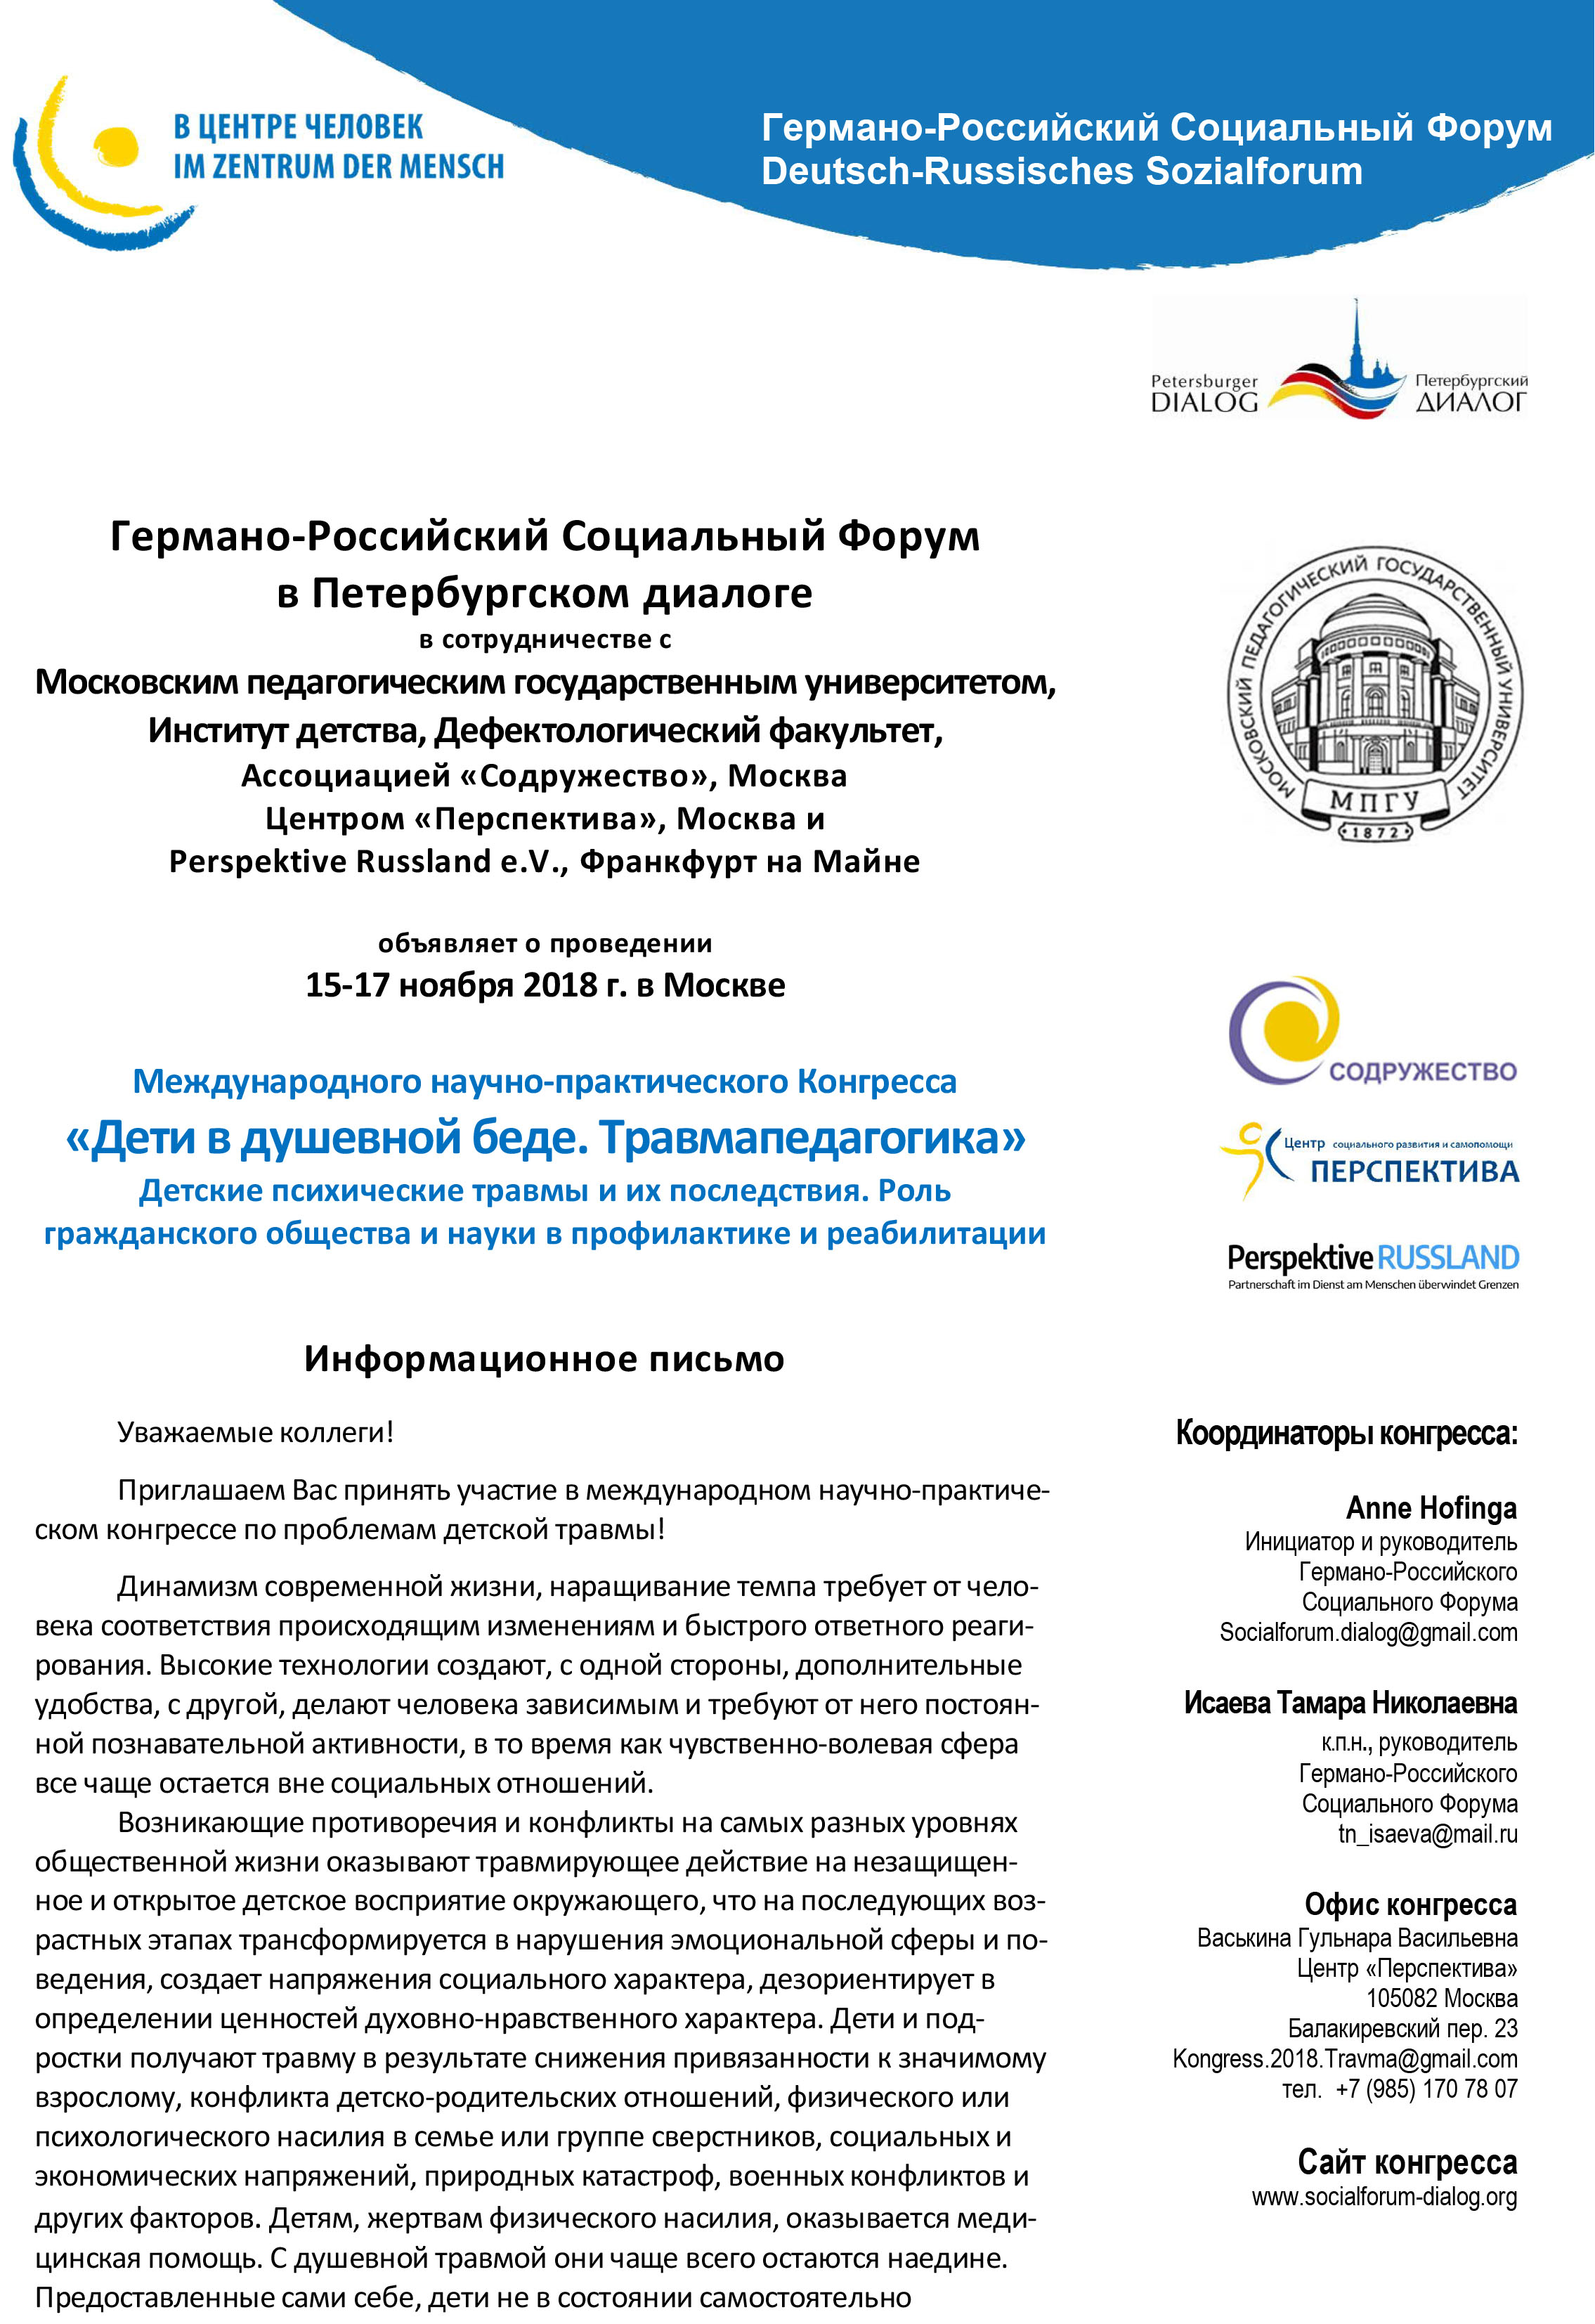 Международный научно-практический Конгресс «Дети в душевной беде. Травмапедагогика» (Москва)